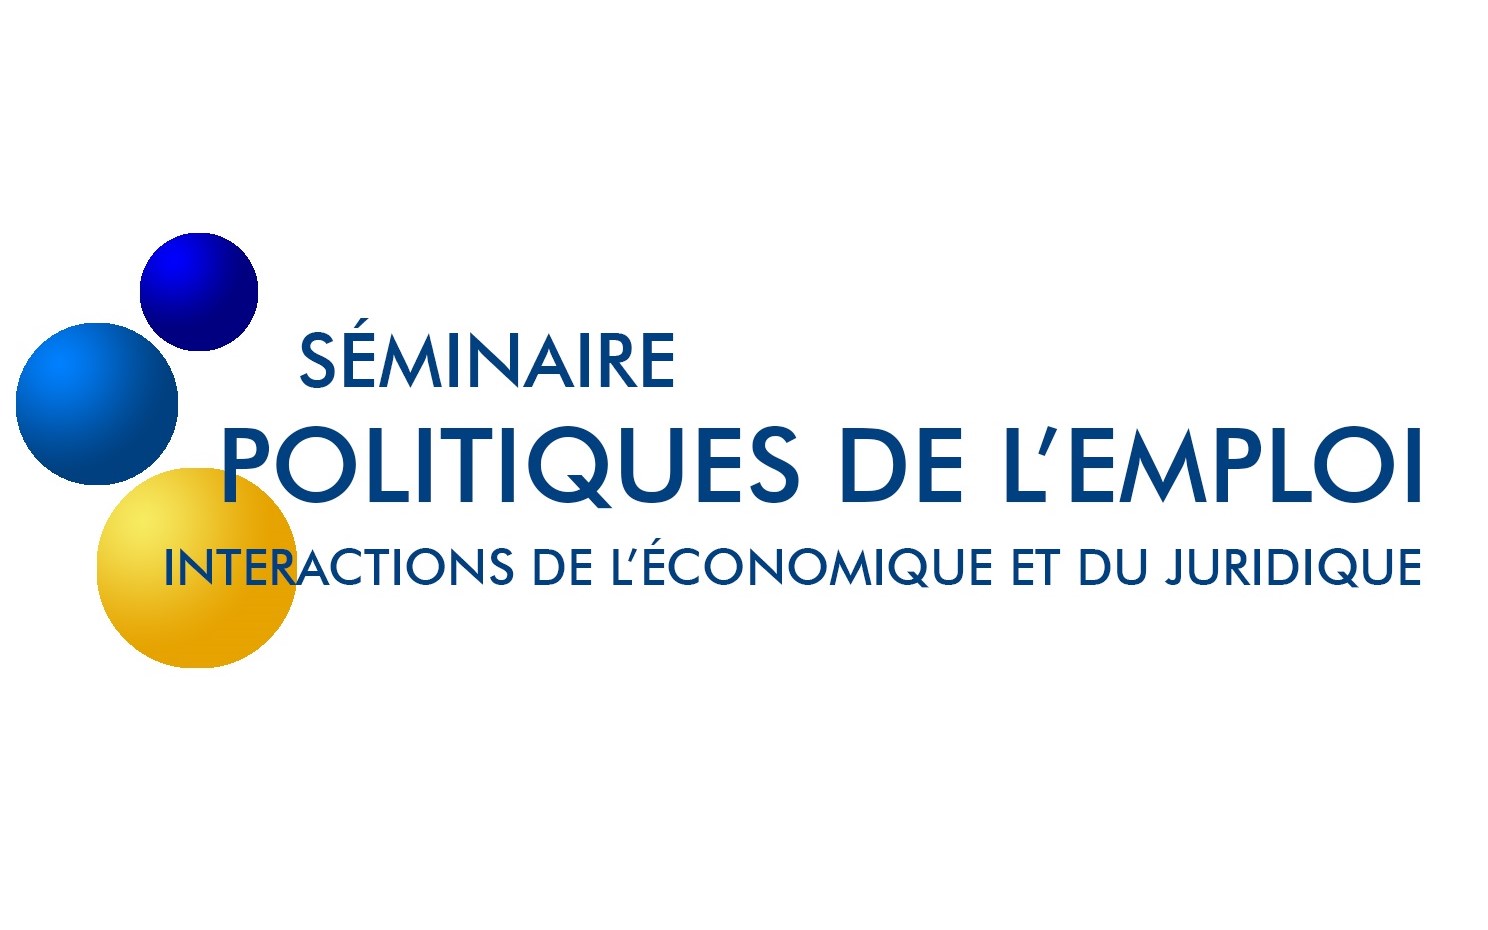 Nous vous tiendrons informés des prochaines séances du séminaire « Politiques de l’emploi -Interactions de l’économique et du juridique »